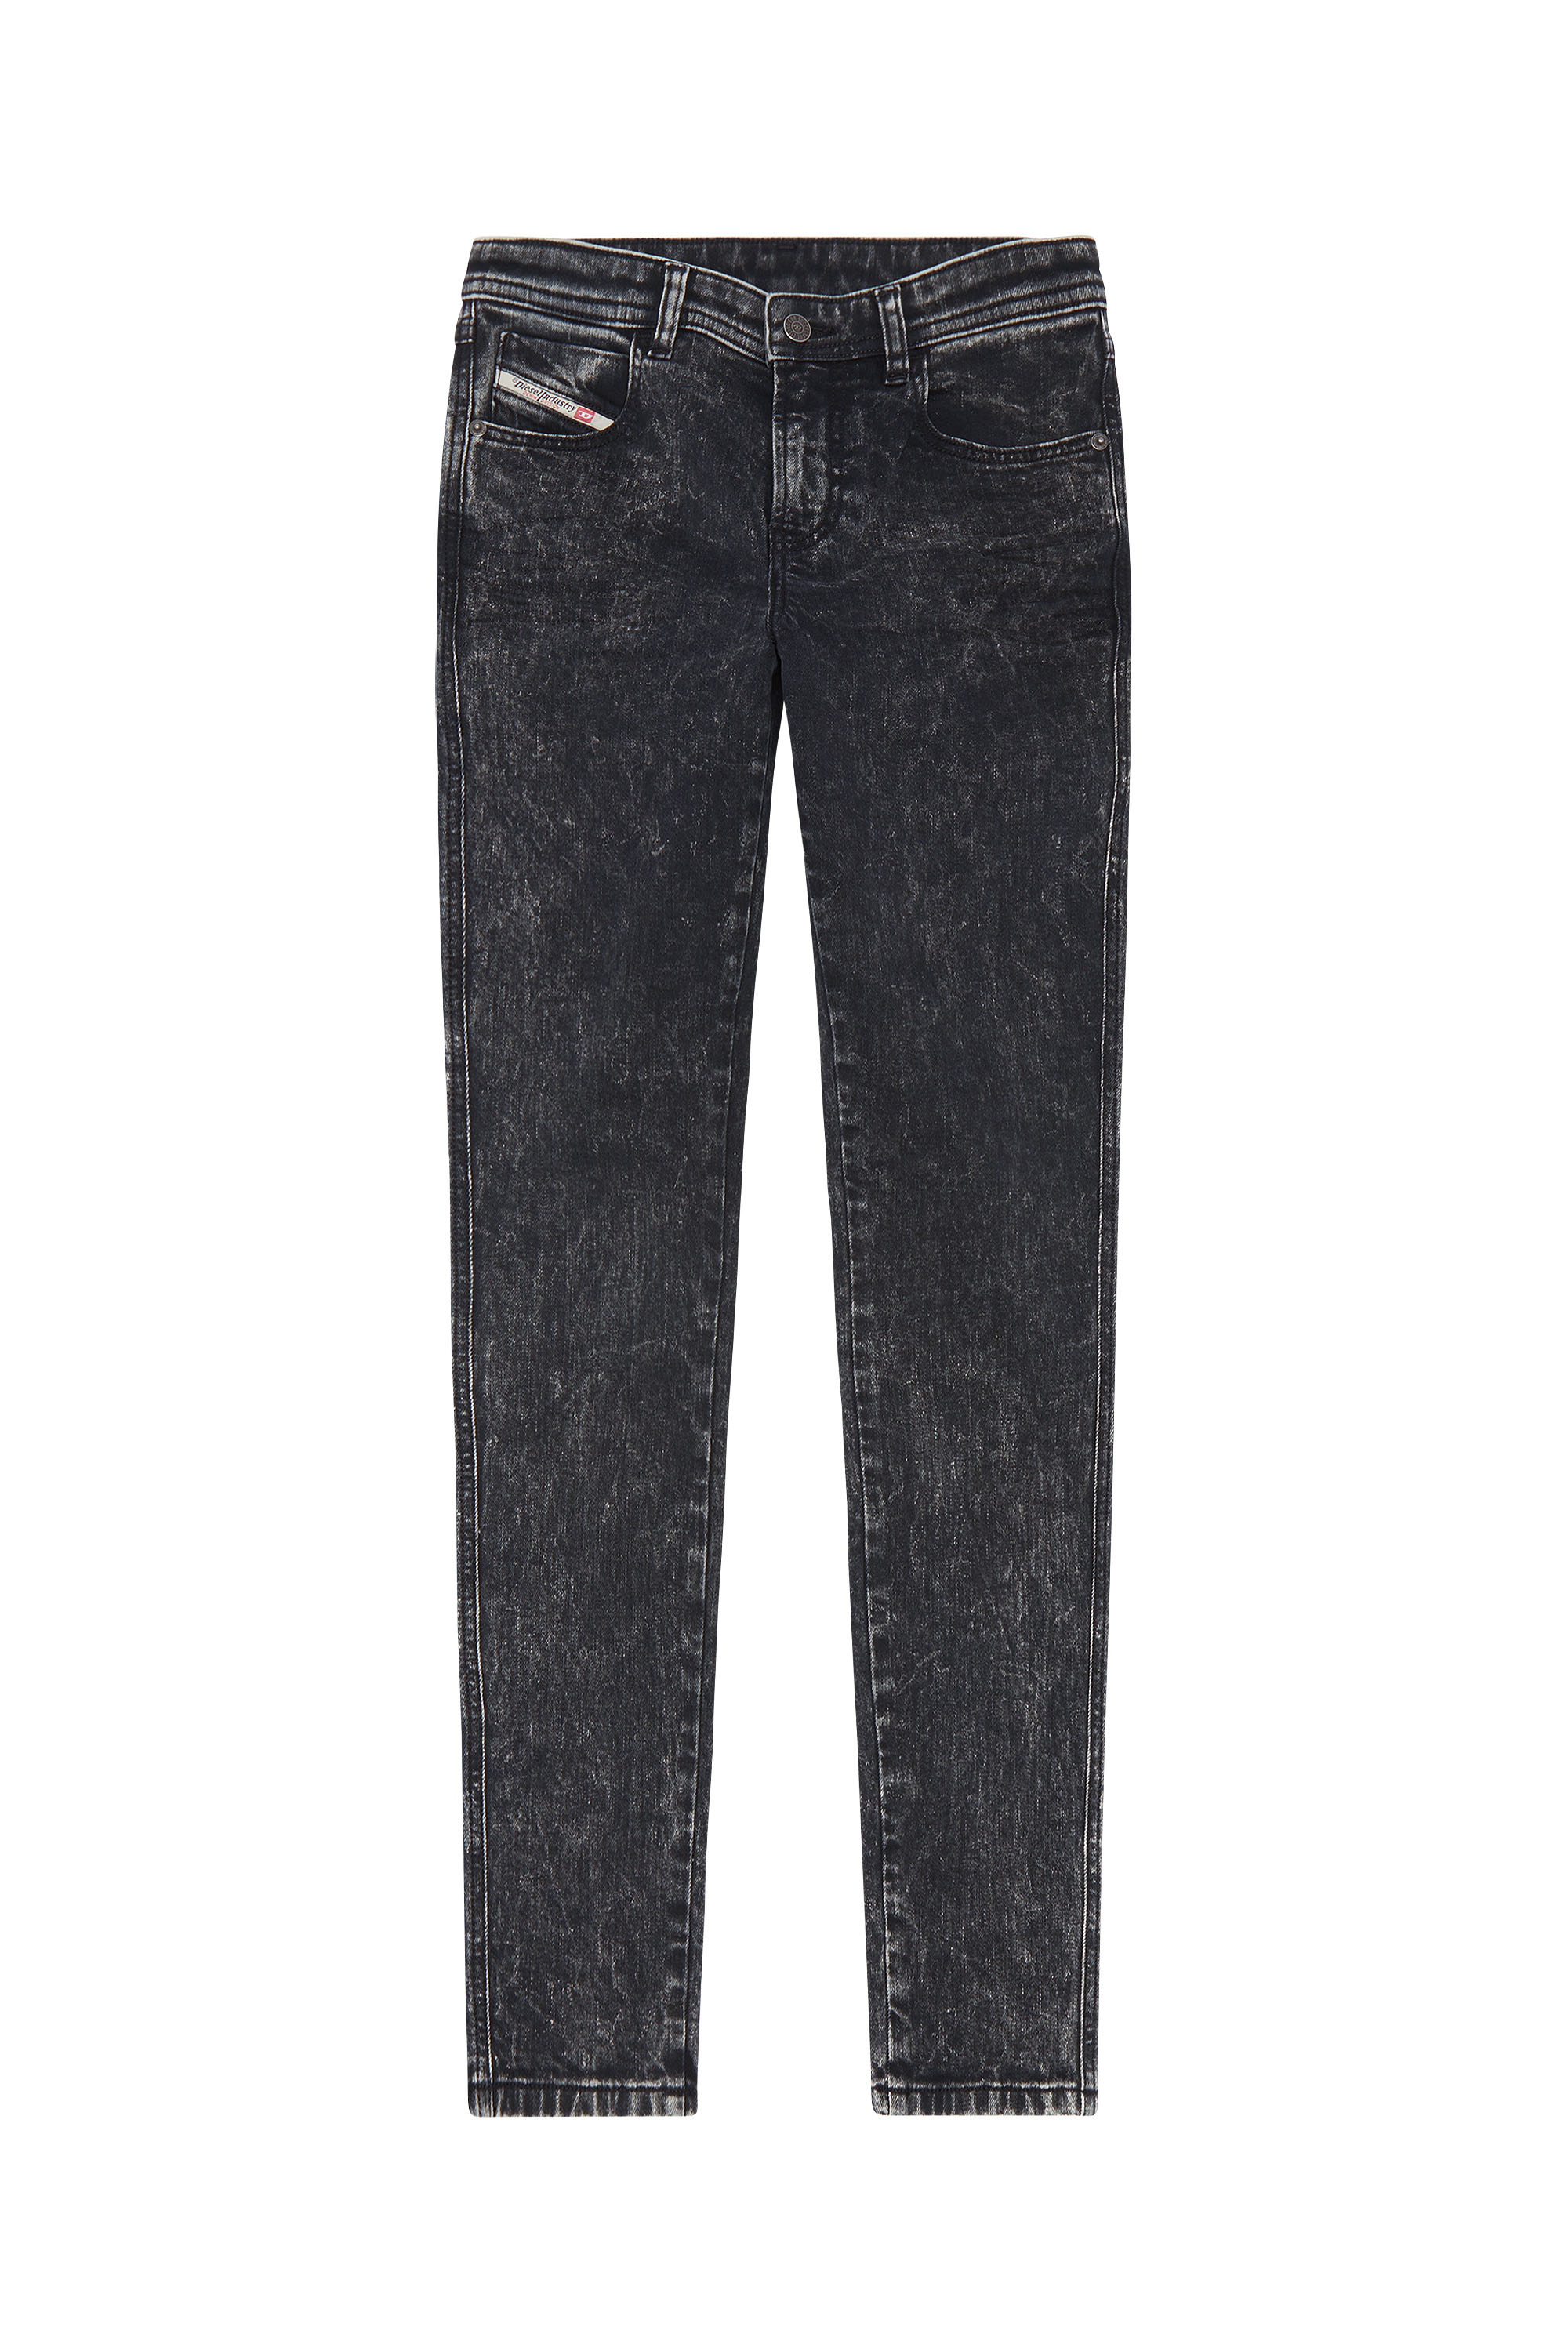 Diesel - Skinny Jeans 2015 Babhila 0ENAN, Black/Dark grey - Image 6